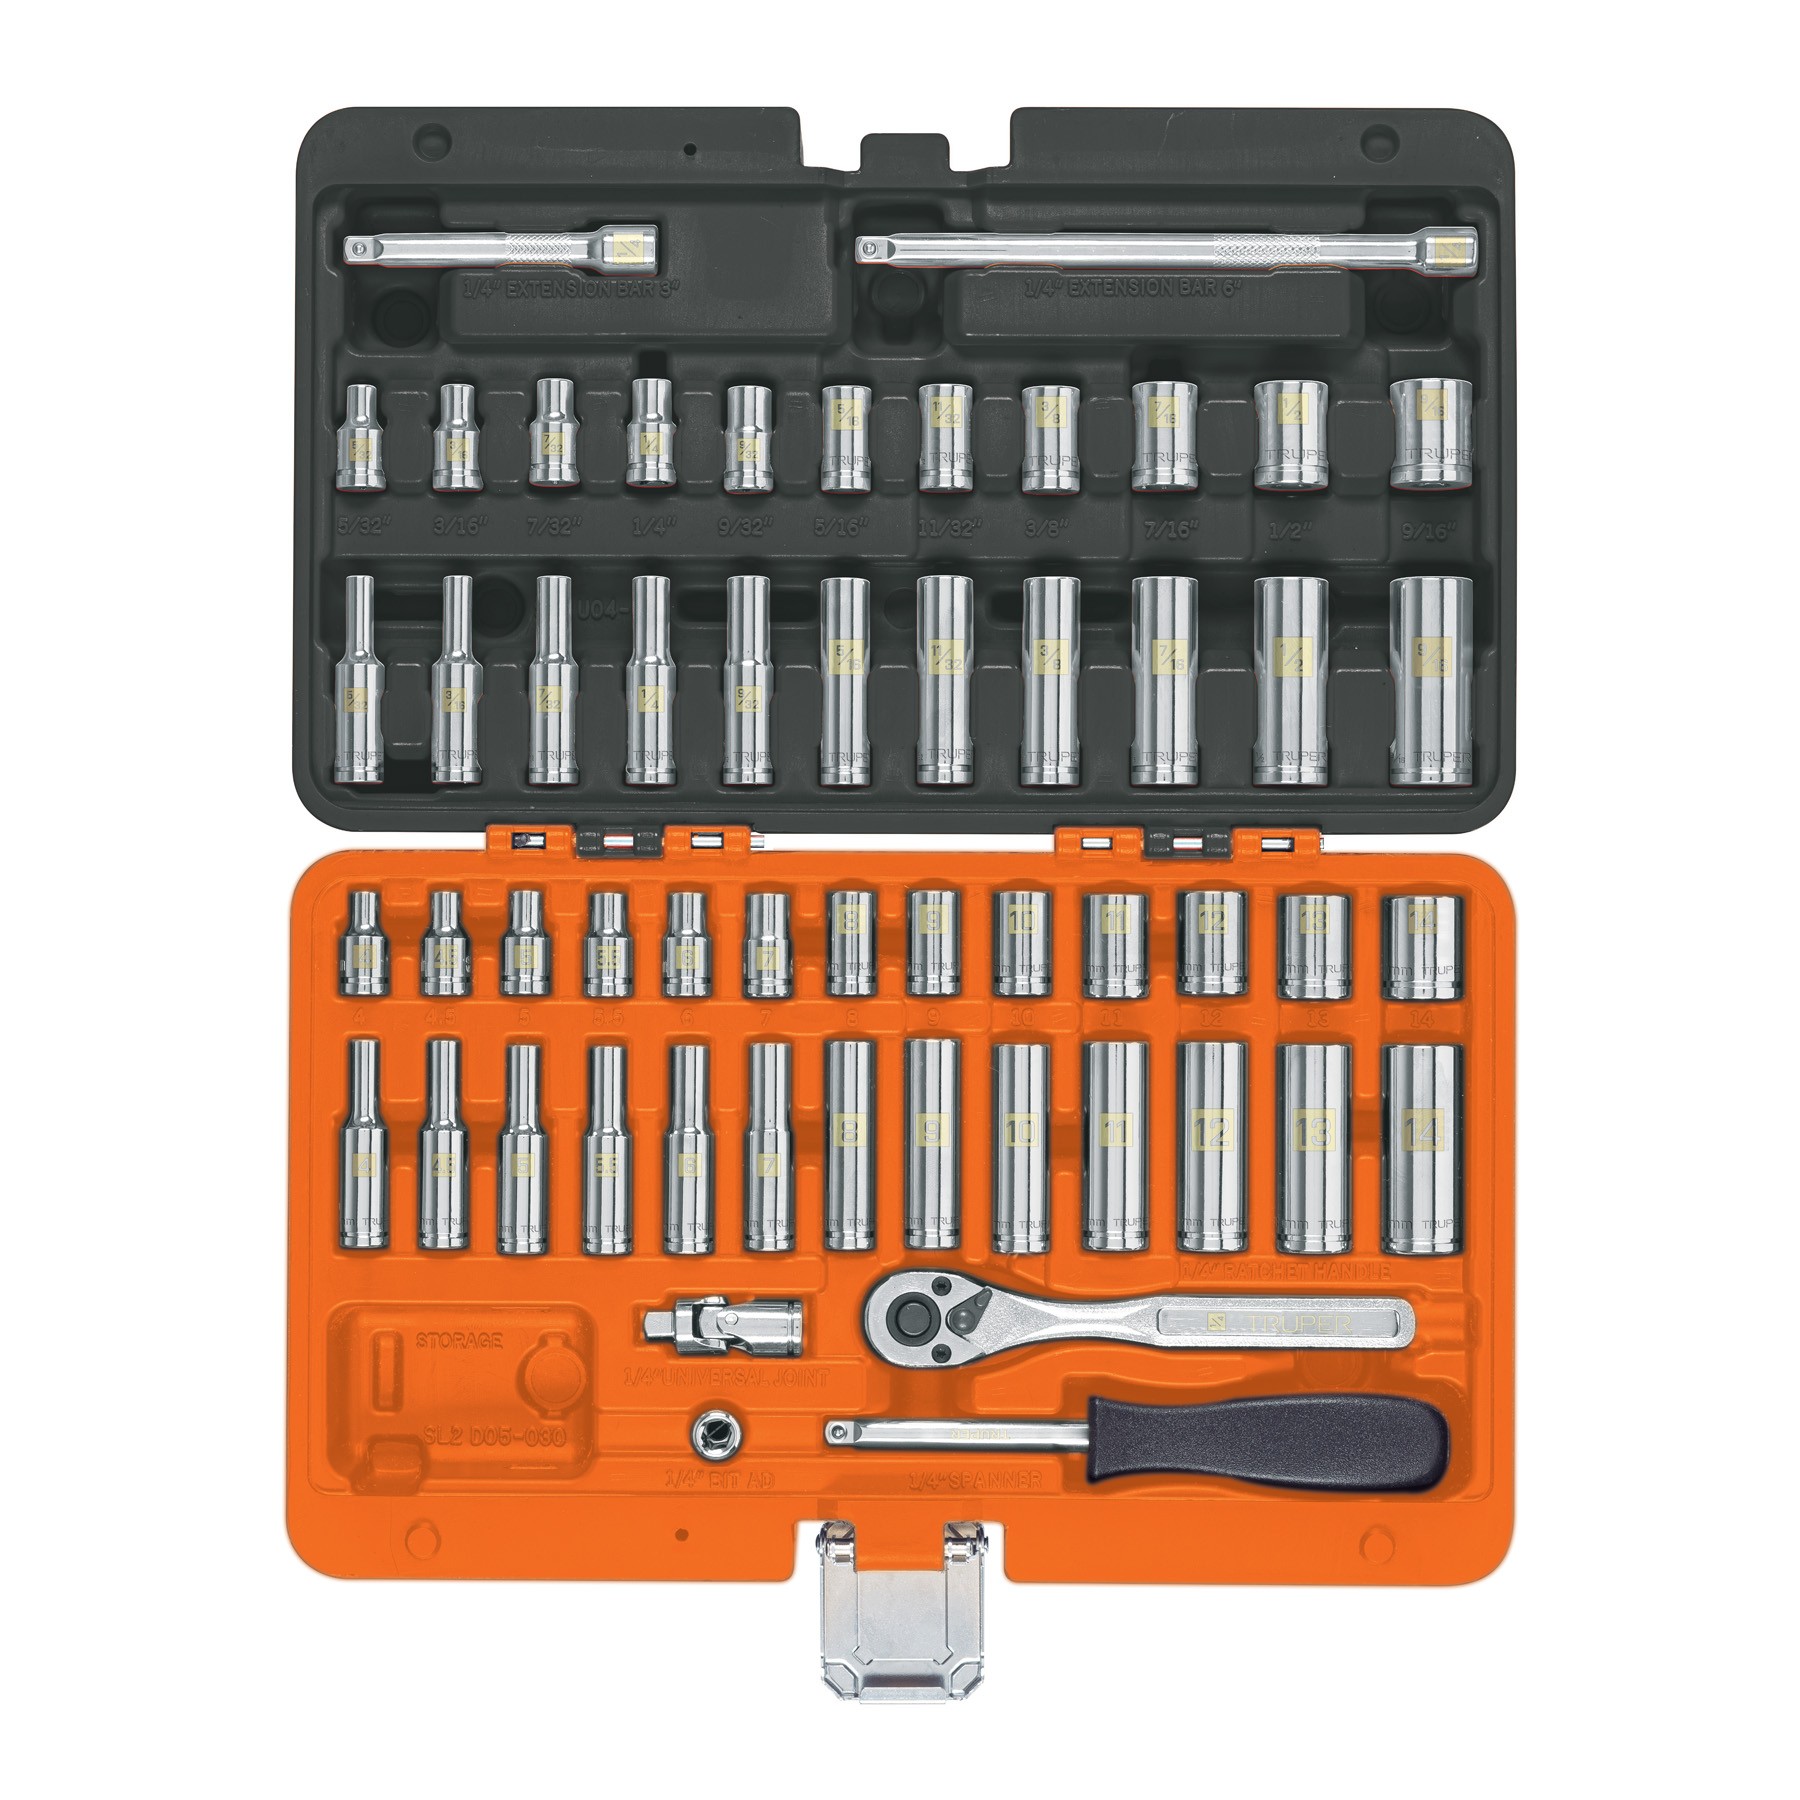 Juego de 54 herramientas cuadro 1/4" std y mm para mecánico